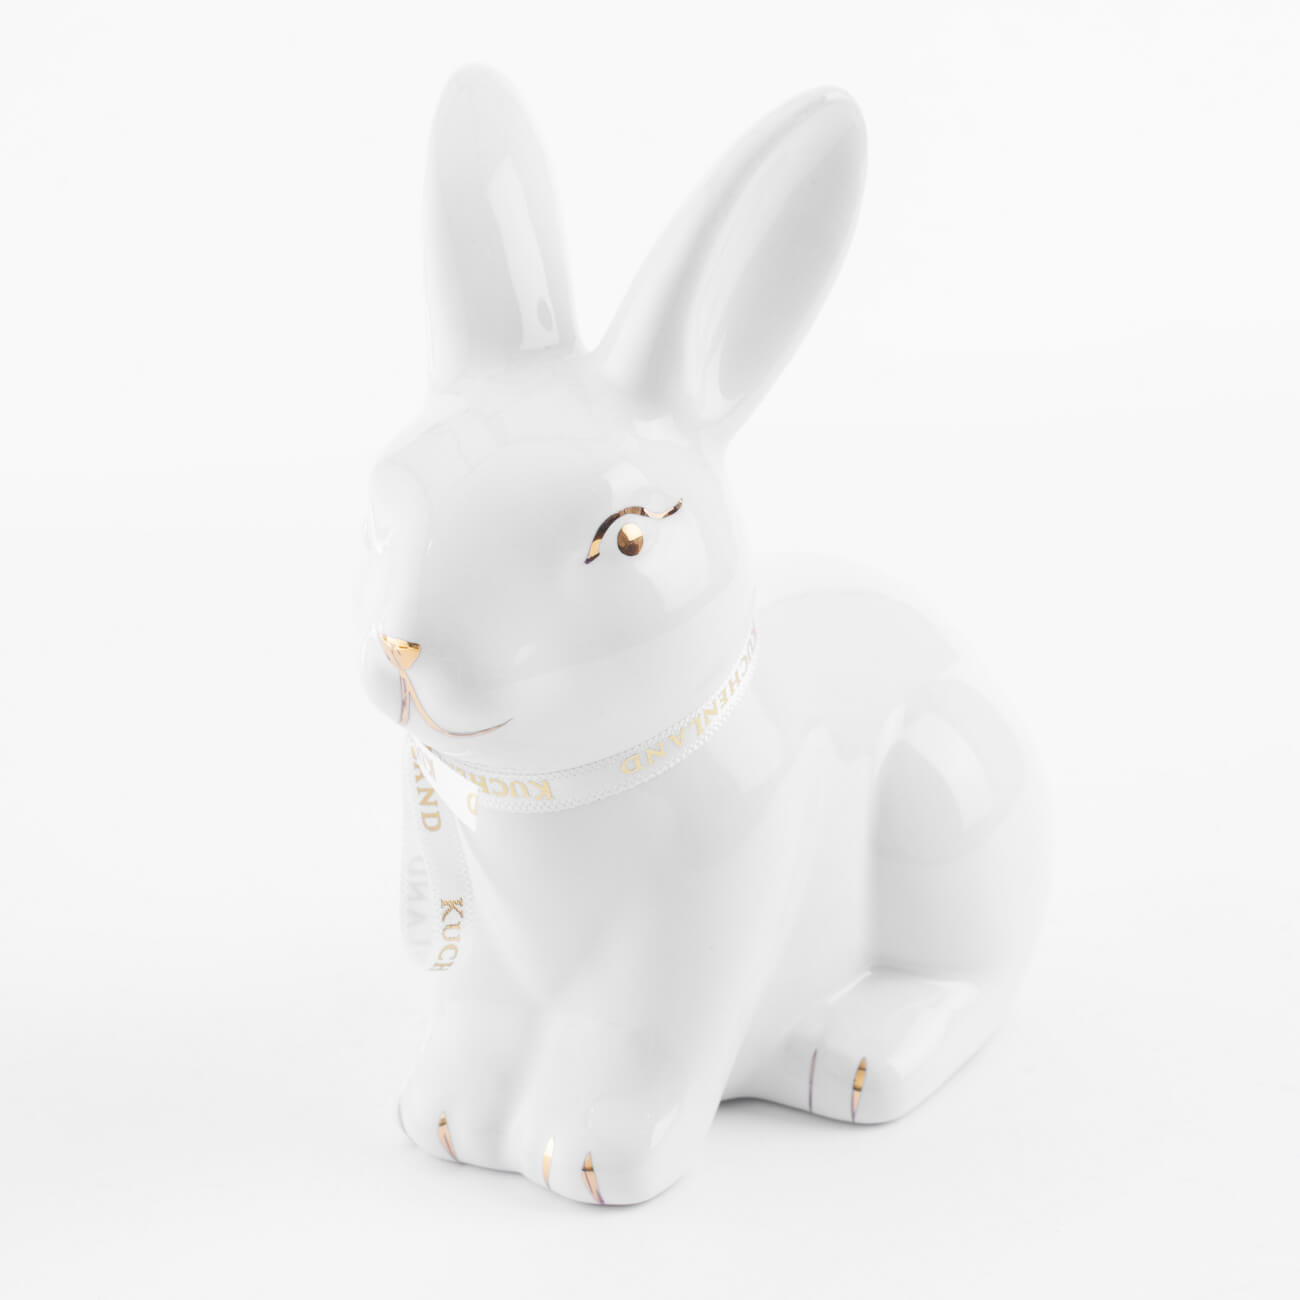 Статуэтка, 13 см, керамика, бело-золотистая, Кролик сидит, Easter gold подставка для яйца 11 см керамика бело золотистая кролик со скорлупой easter gold